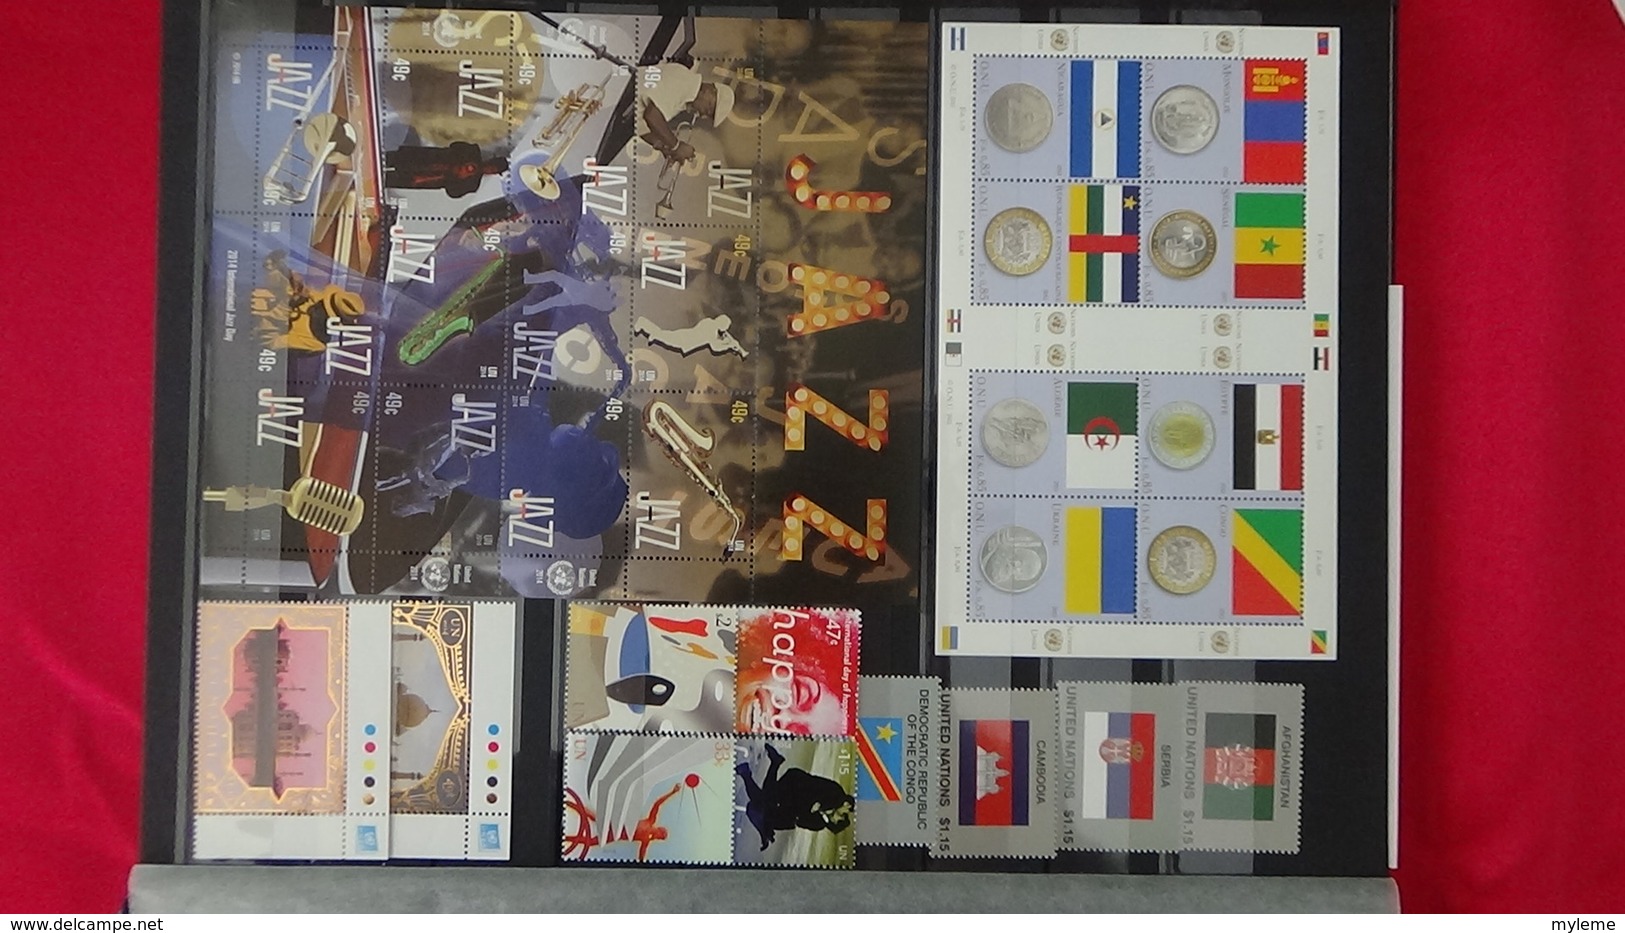 Superbe collection ** timbres et blocs des Nations Unies  Port offert dès 50 EUROS d'achats